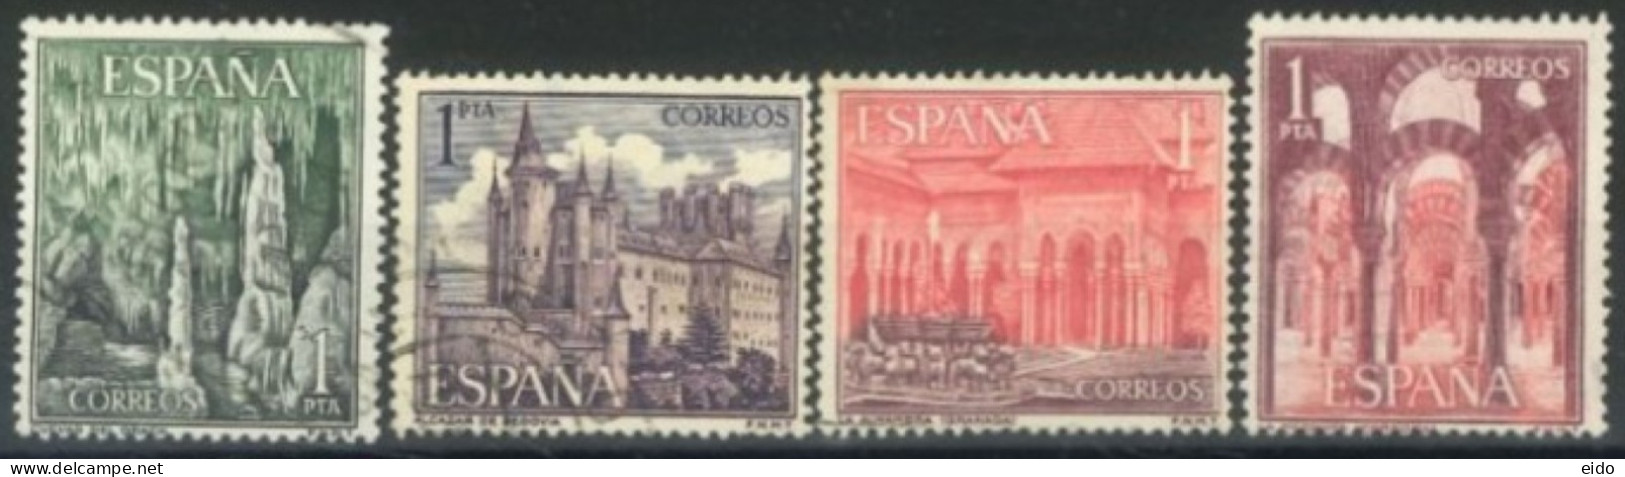 SPAIN, 1964, TORISM STAMPS SET OF 4, # 1205/08, USED. - Oblitérés